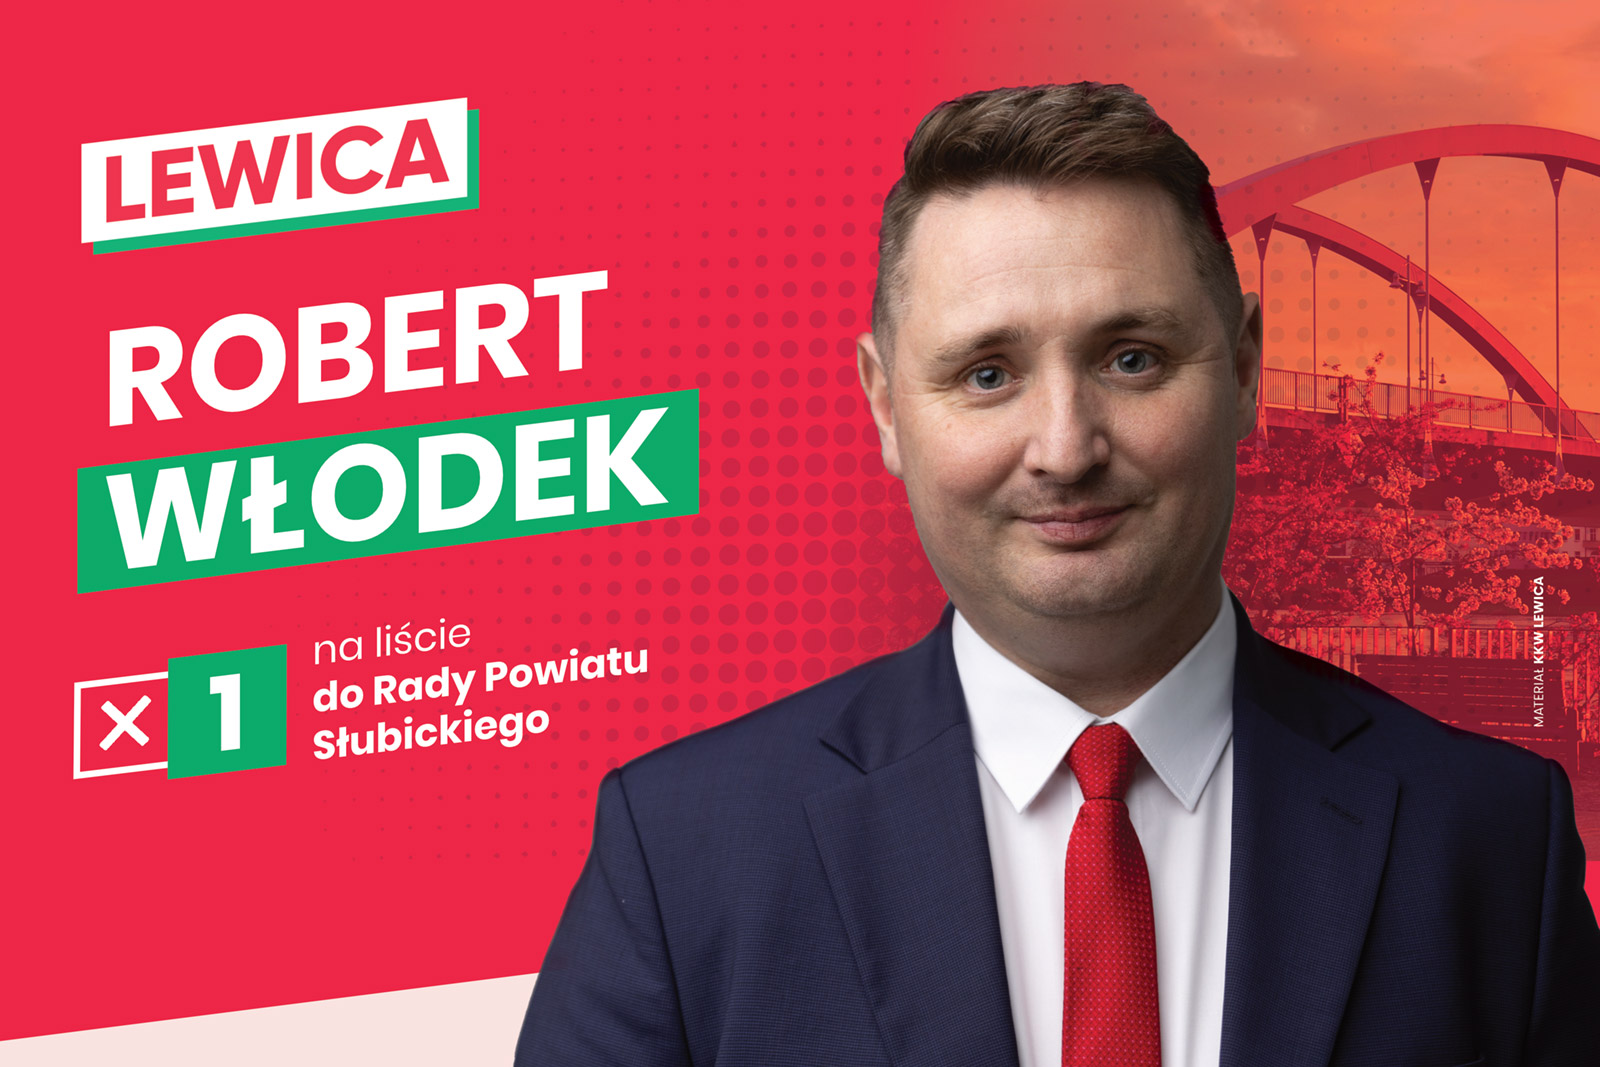 Robert Włodek - kandydat do Rady Powiatu Słubickiego